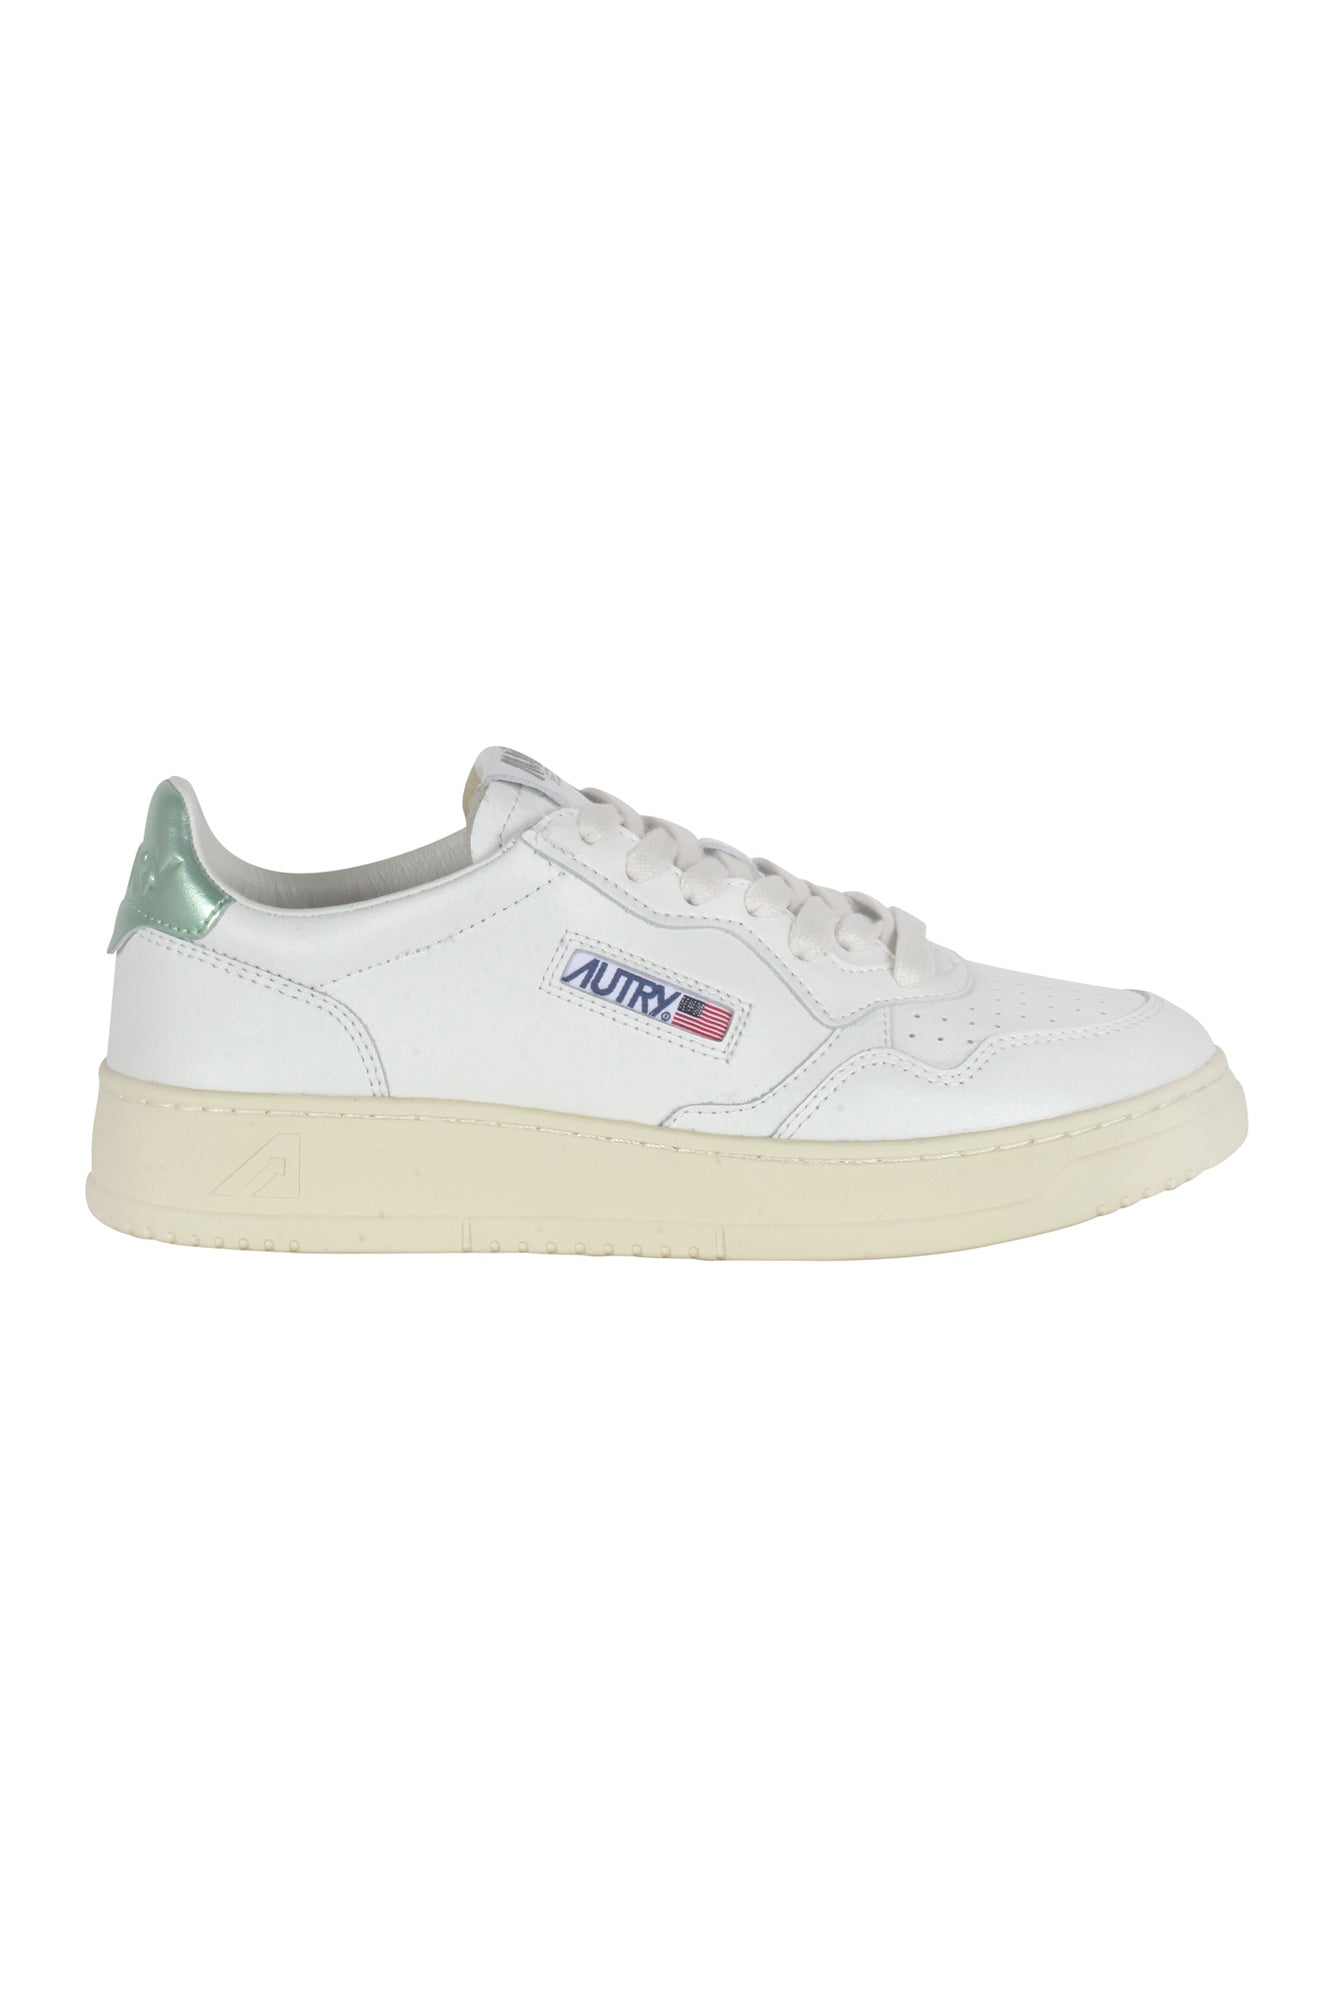 Autry - Sneakers - 430031 - Bianco/Verde